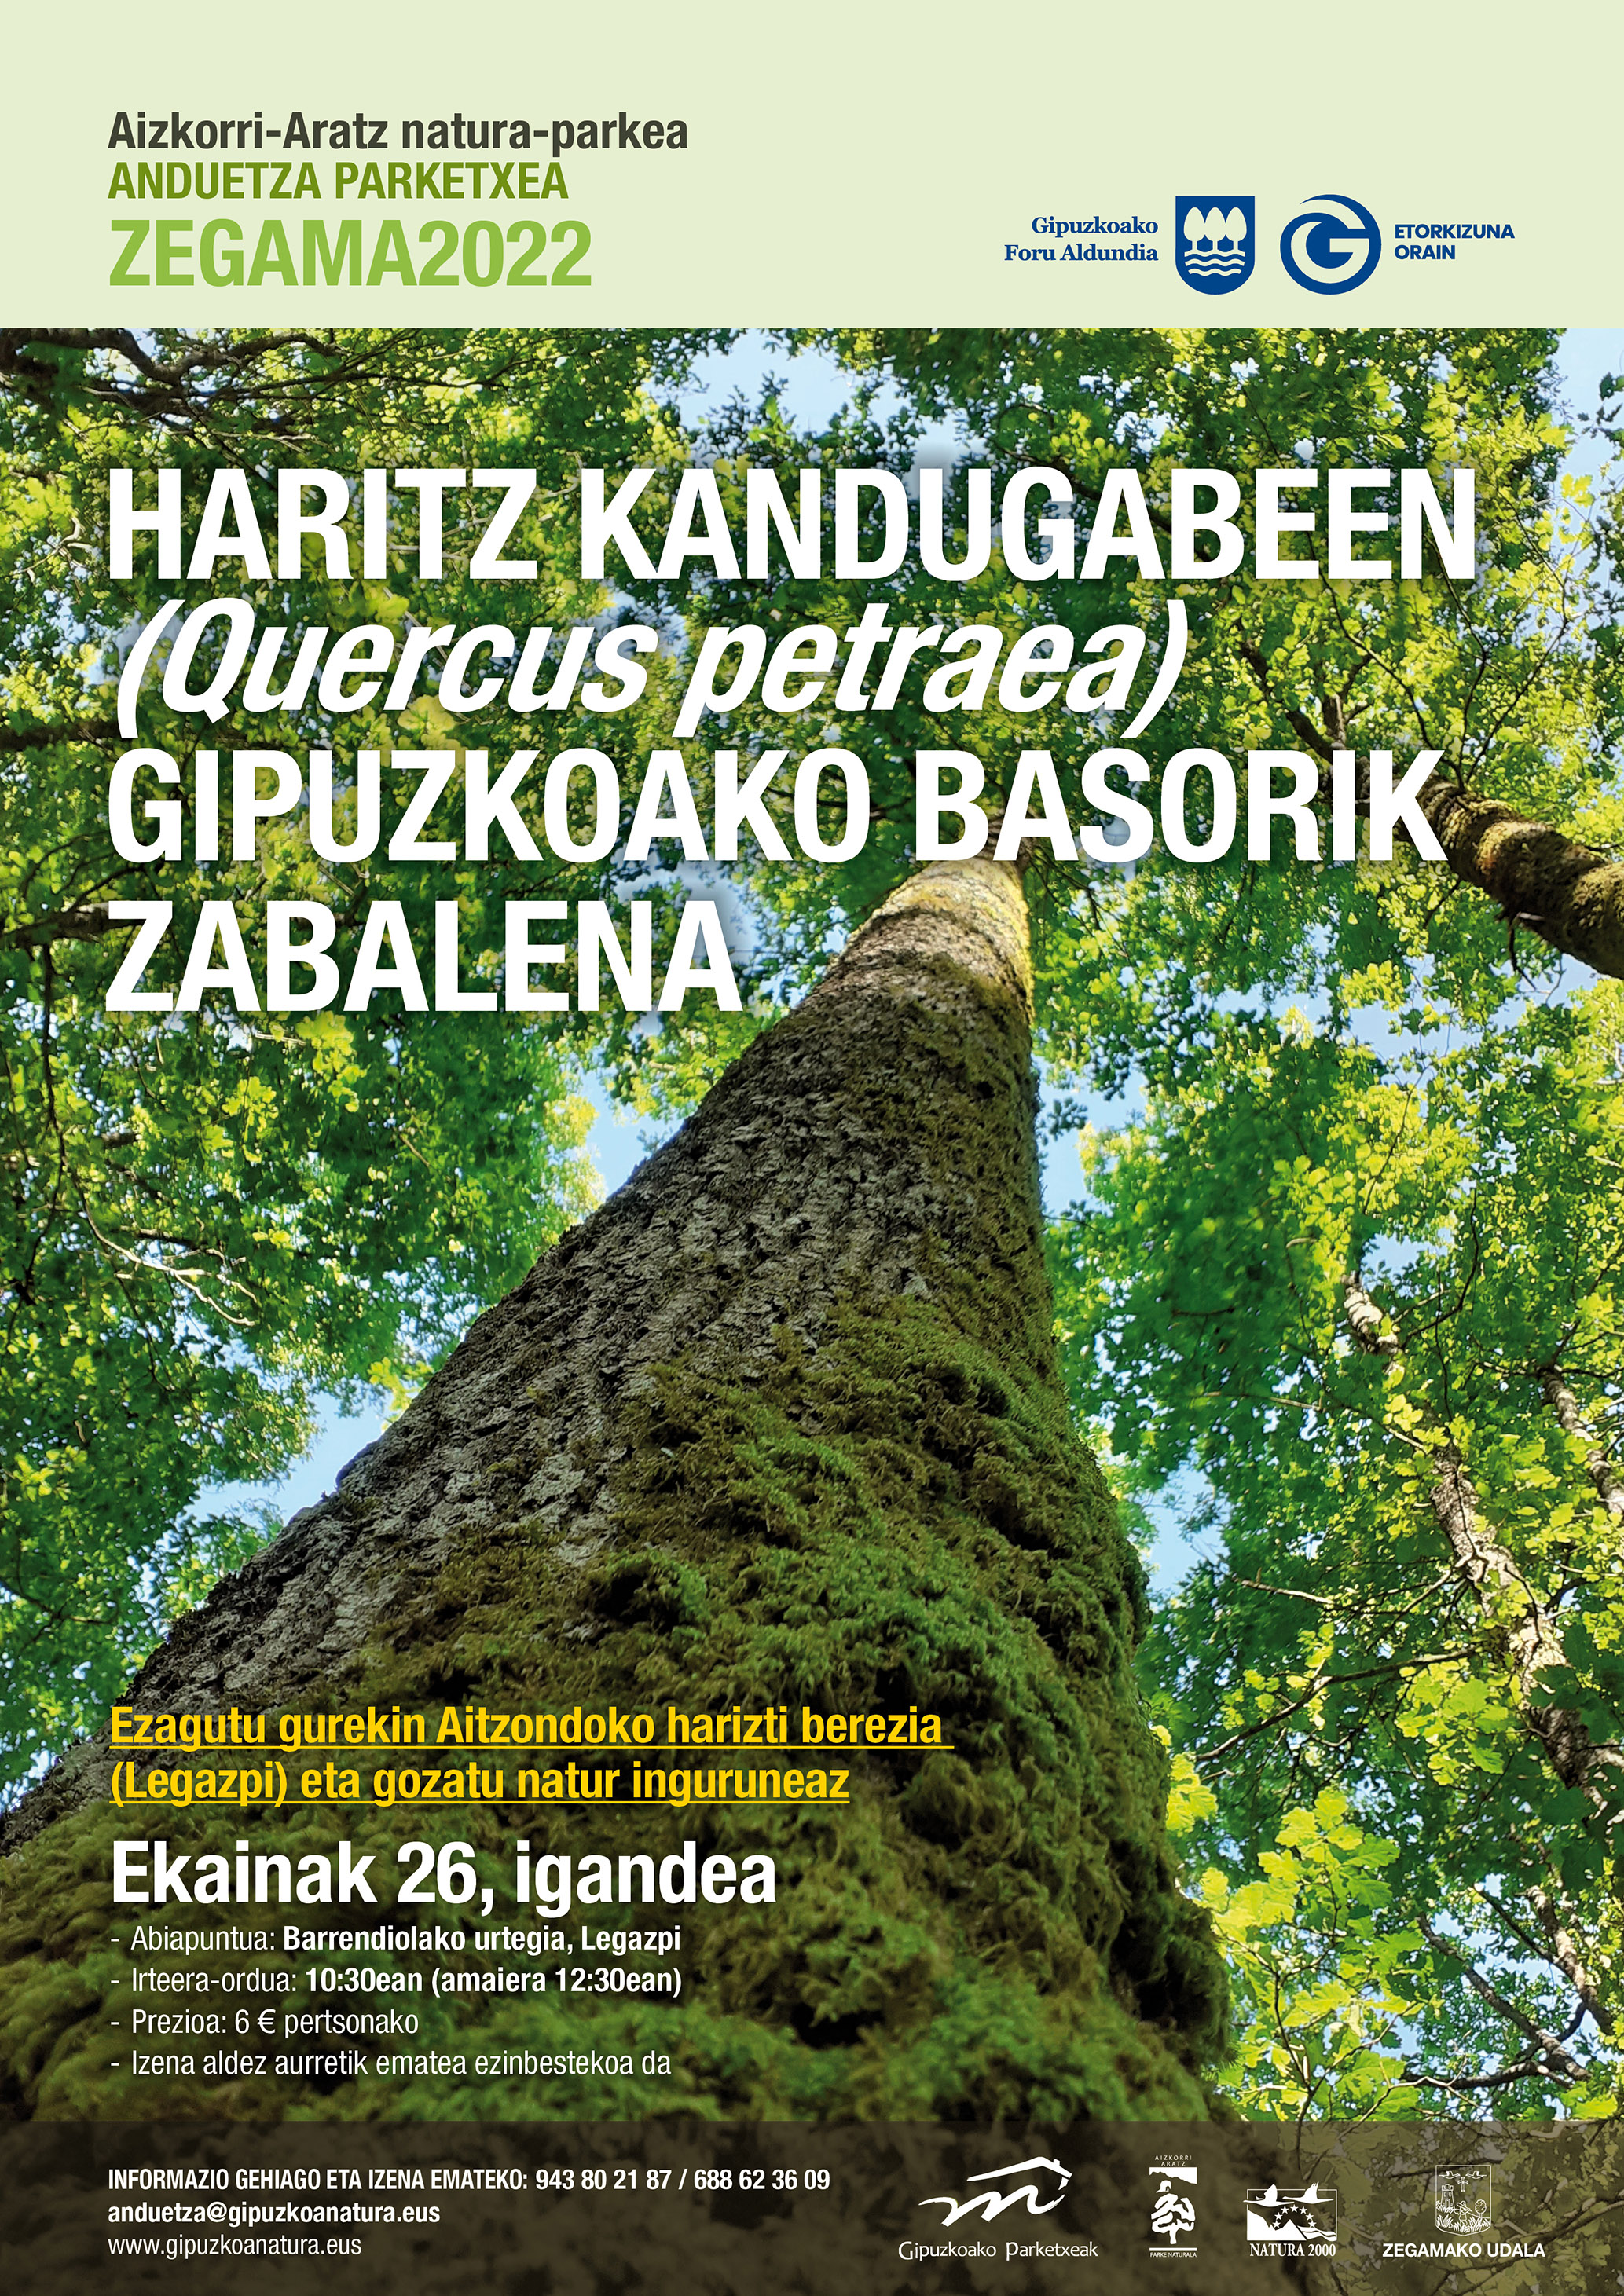 Salida guiada: El bosque de roble albar (Quercus petraea) más extenso de Gipuzkoa (Legazpia).